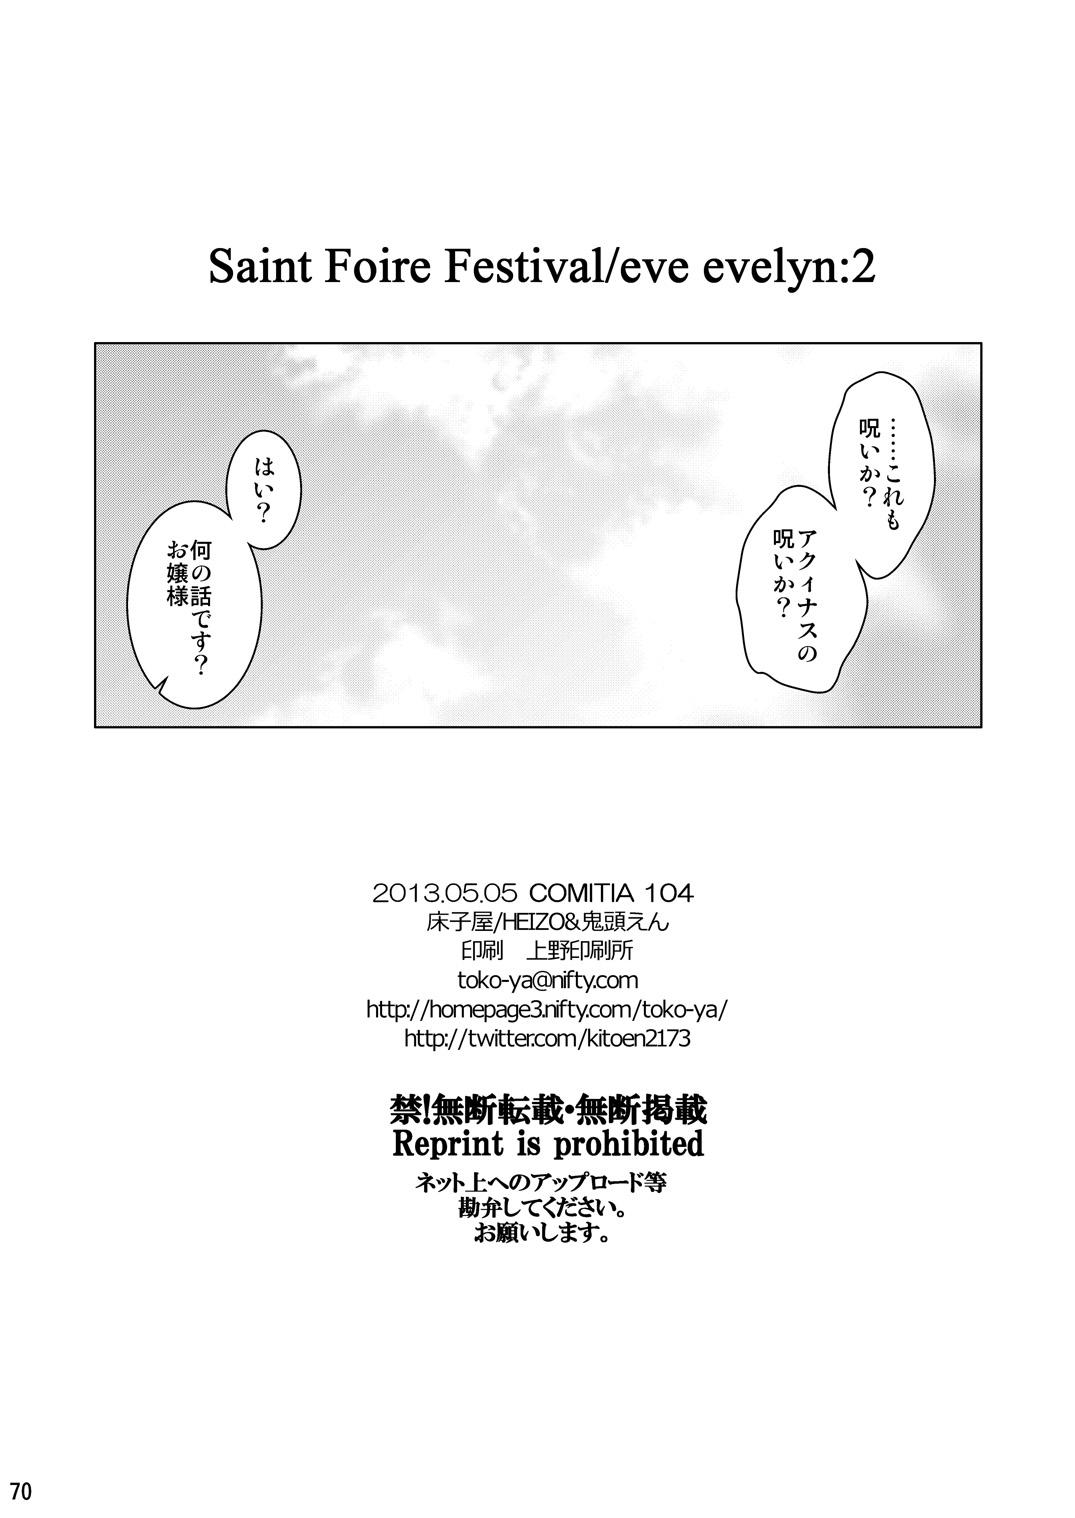 Saint Foire Festival Eve Evelyn:2 68